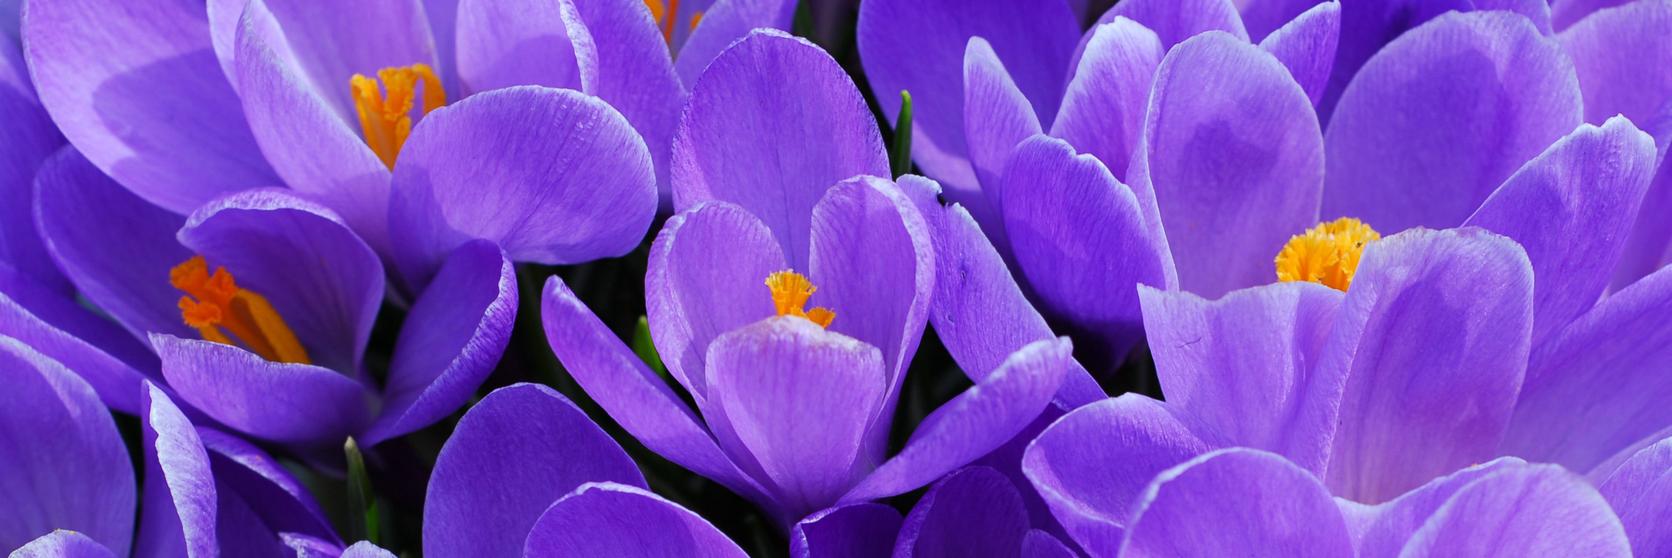 crocus-purple-flowers